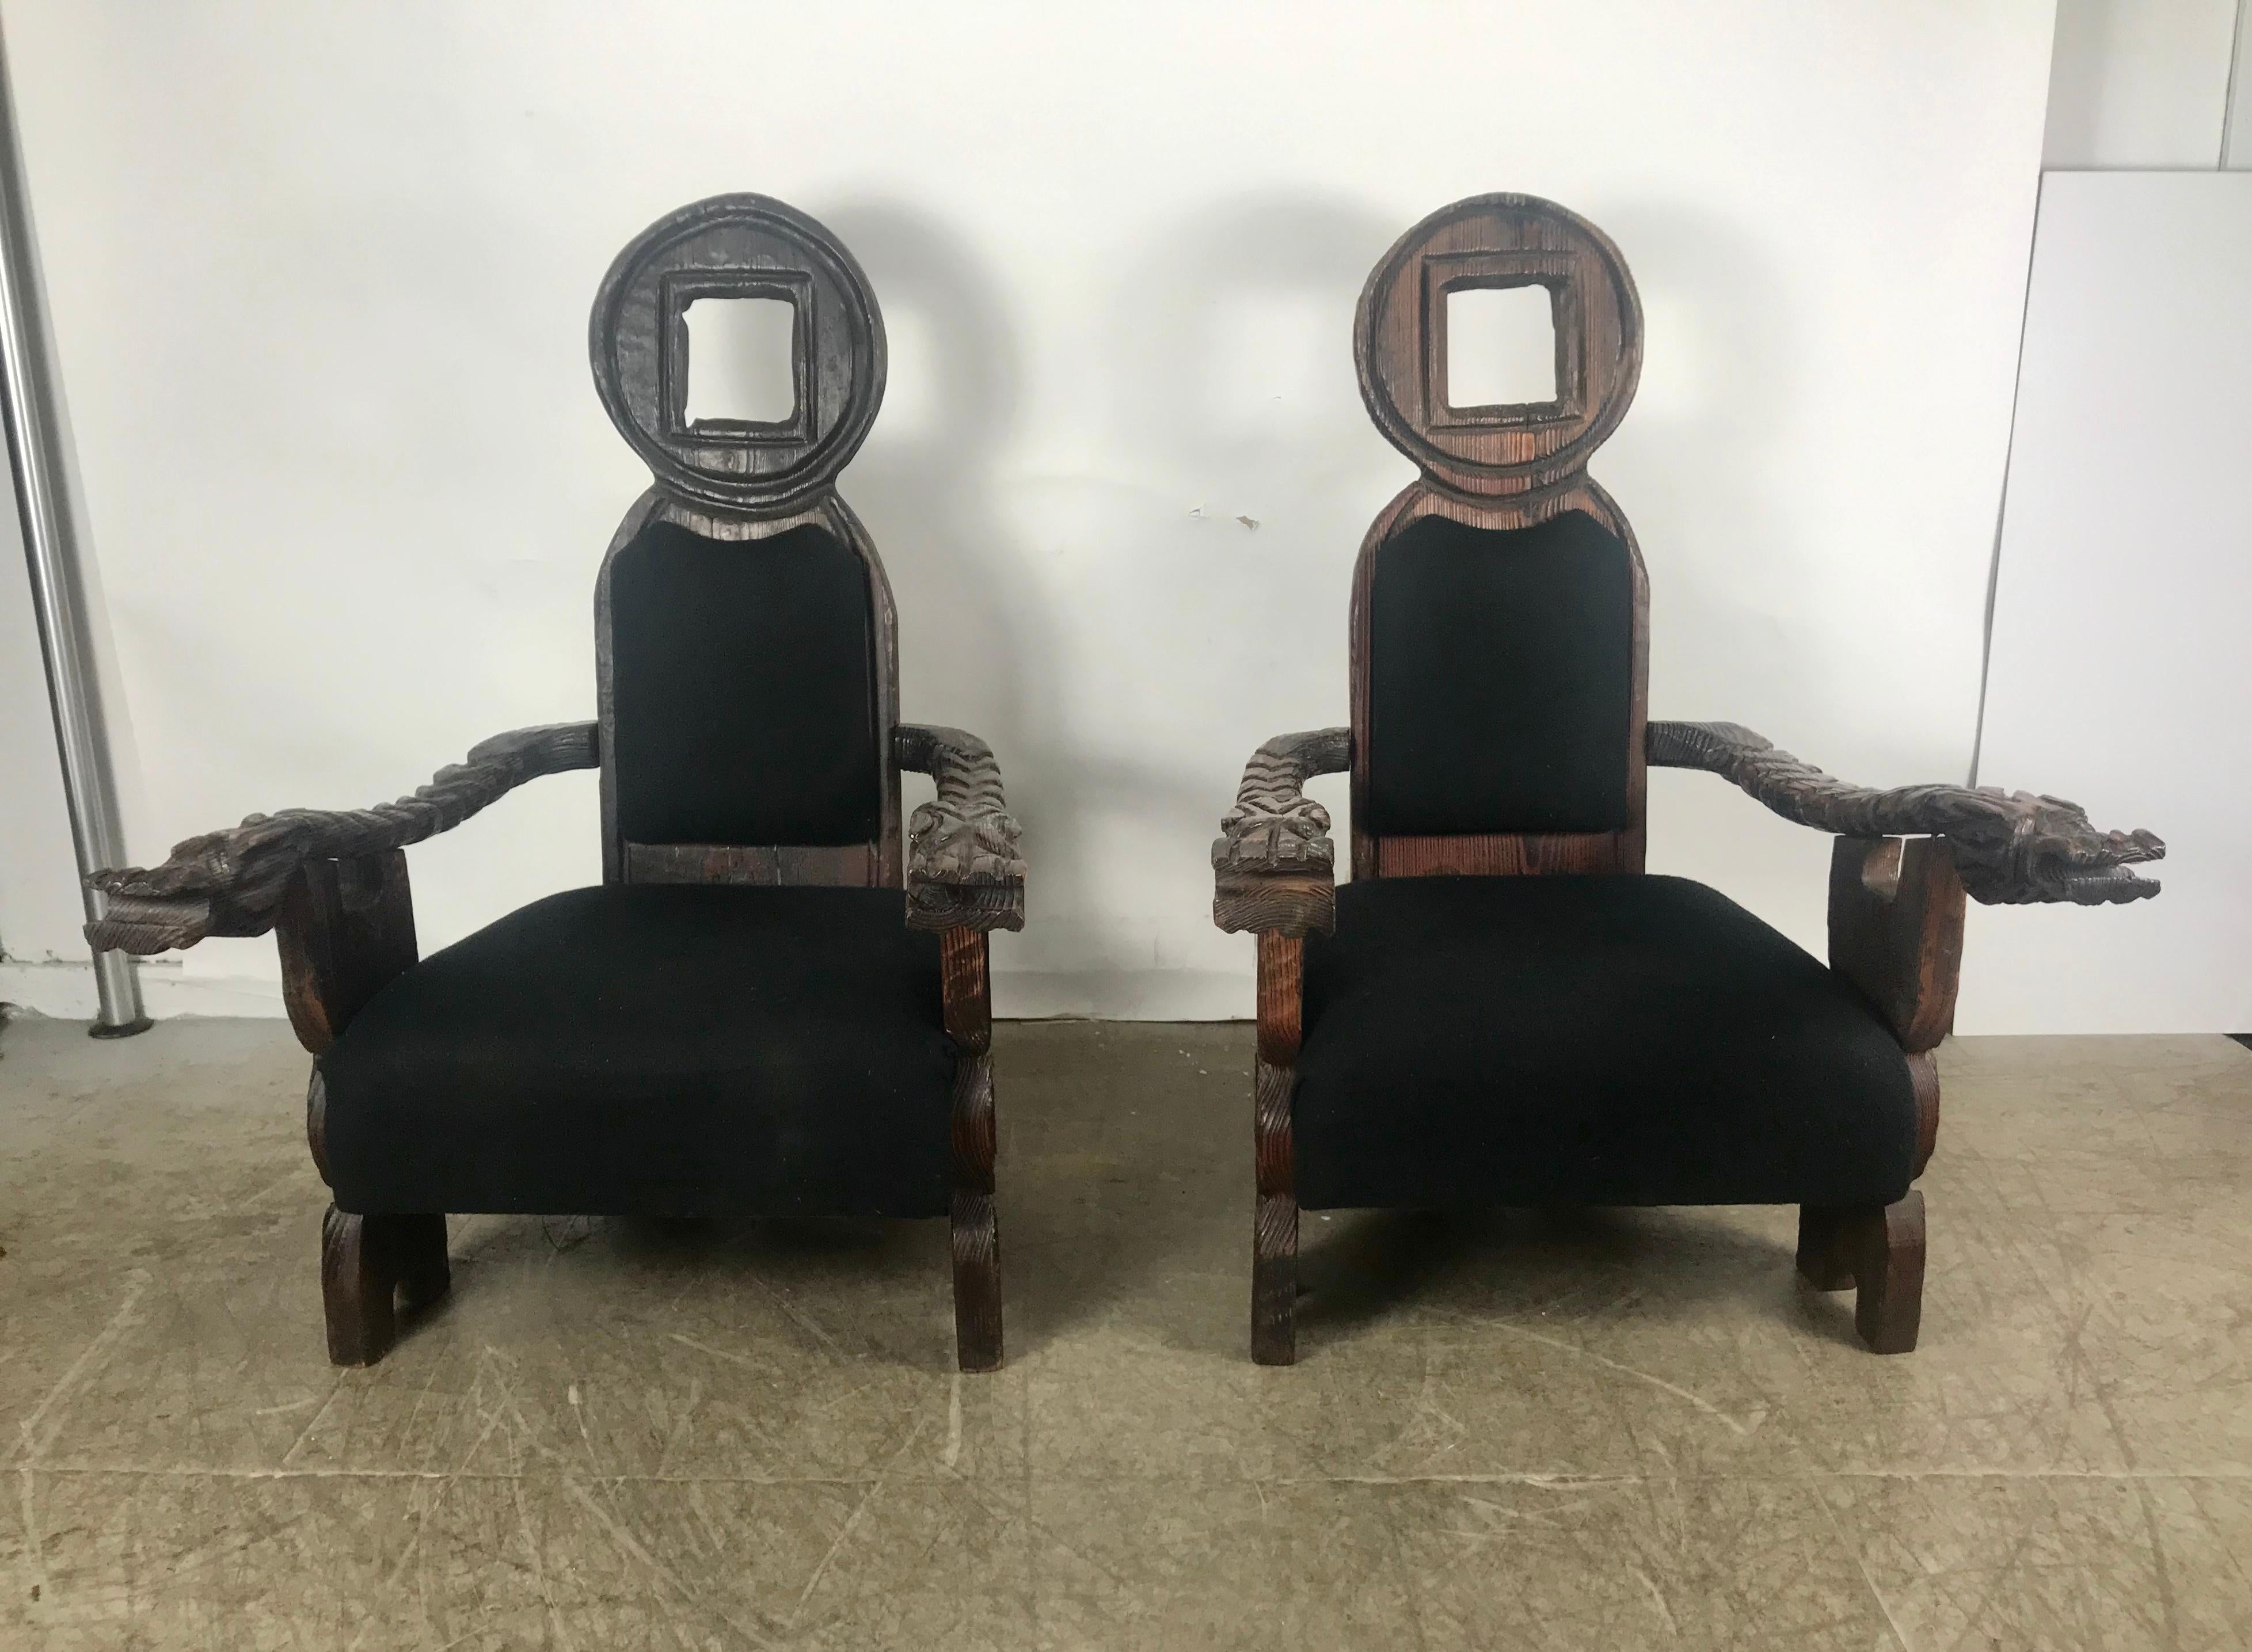 Ungewöhnliches Paar übergroßer Teki Modern Lounge Chairs von William Westenhaver für Witco, definitiv überdimensioniert, dieselben Stühle sind auch in Elvis Presleys Graceland zu sehen. Crazy geschnitzt Nussbaum, Wasserspeier Design, behält original